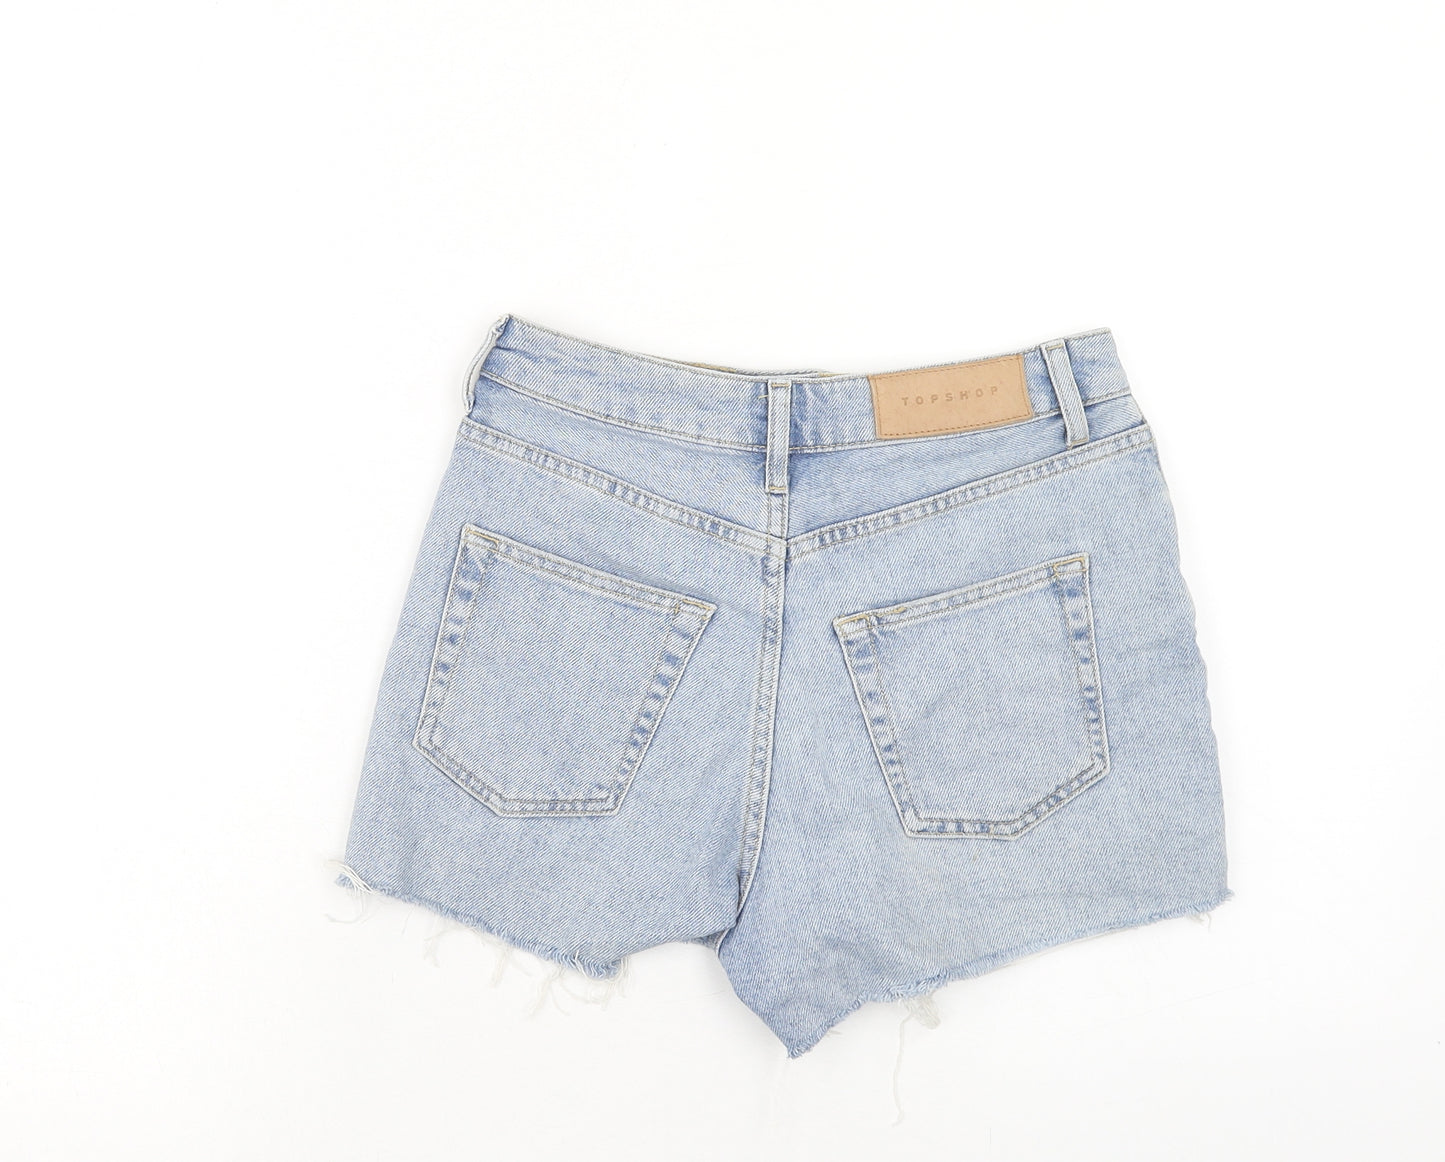 Topshop Womens Blue Cotton Cut-Off Shorts Size 8 Regular Zip